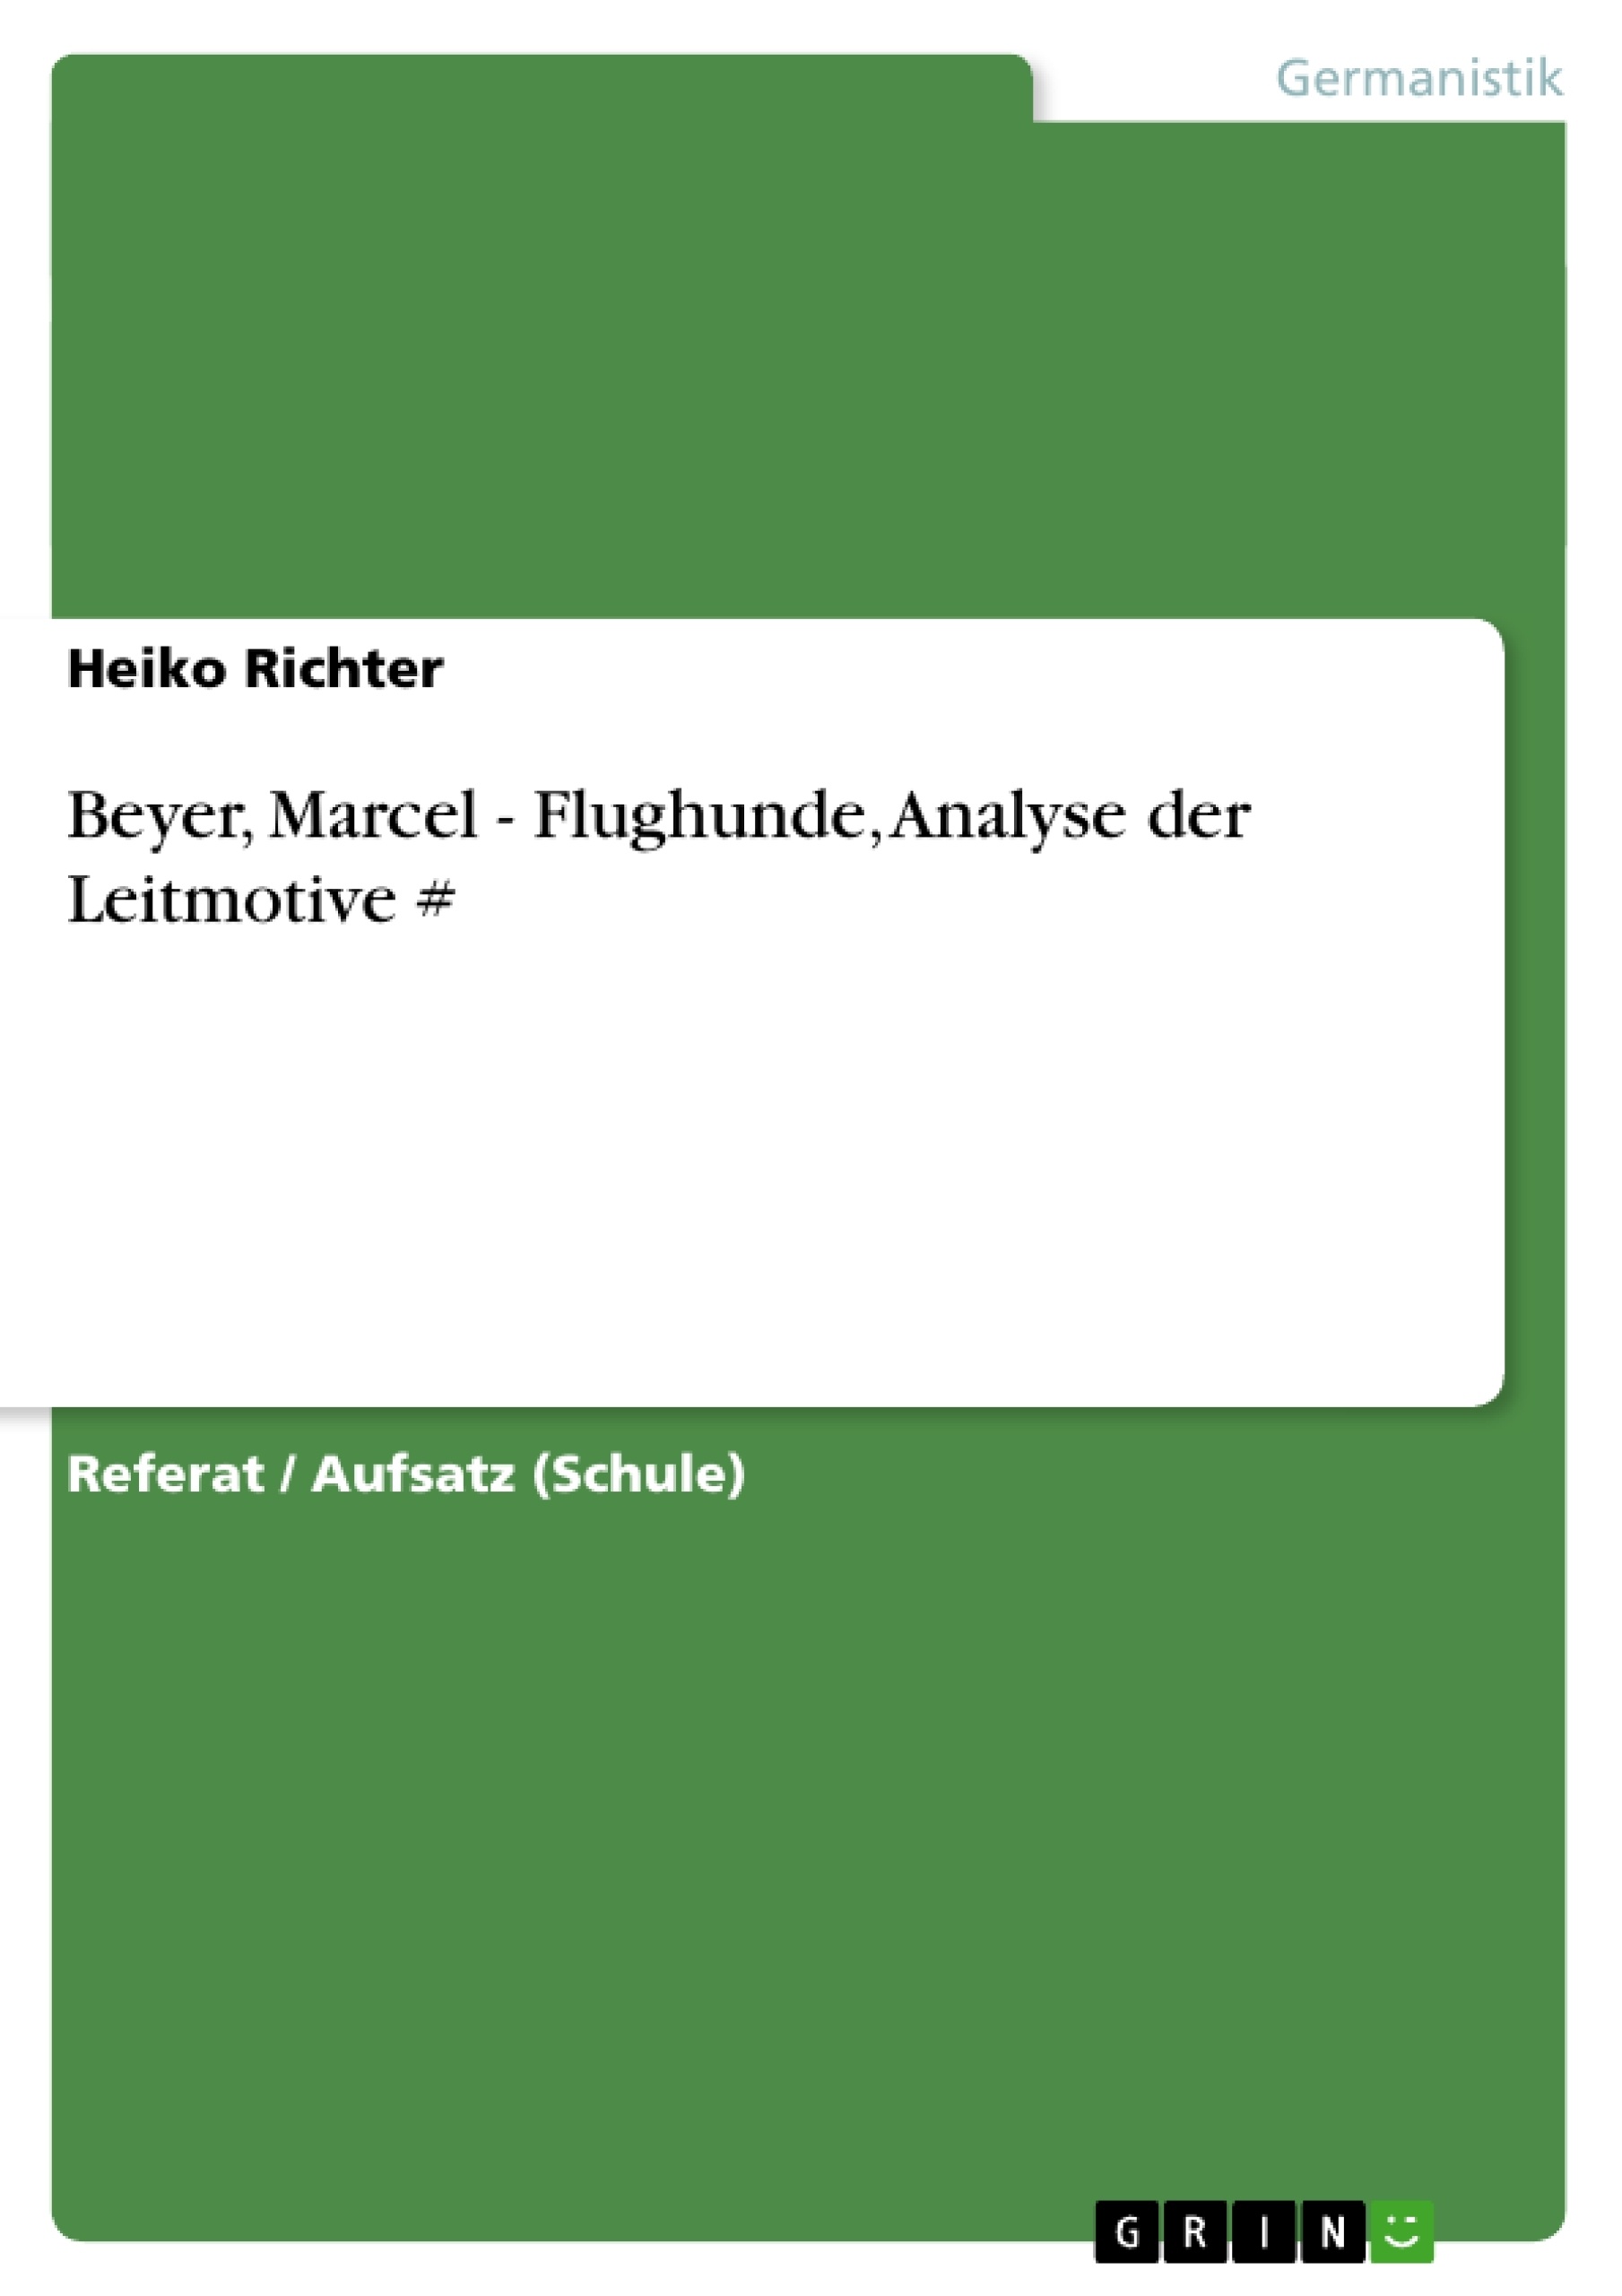 Title: Beyer, Marcel - Flughunde, Analyse der Leitmotive #